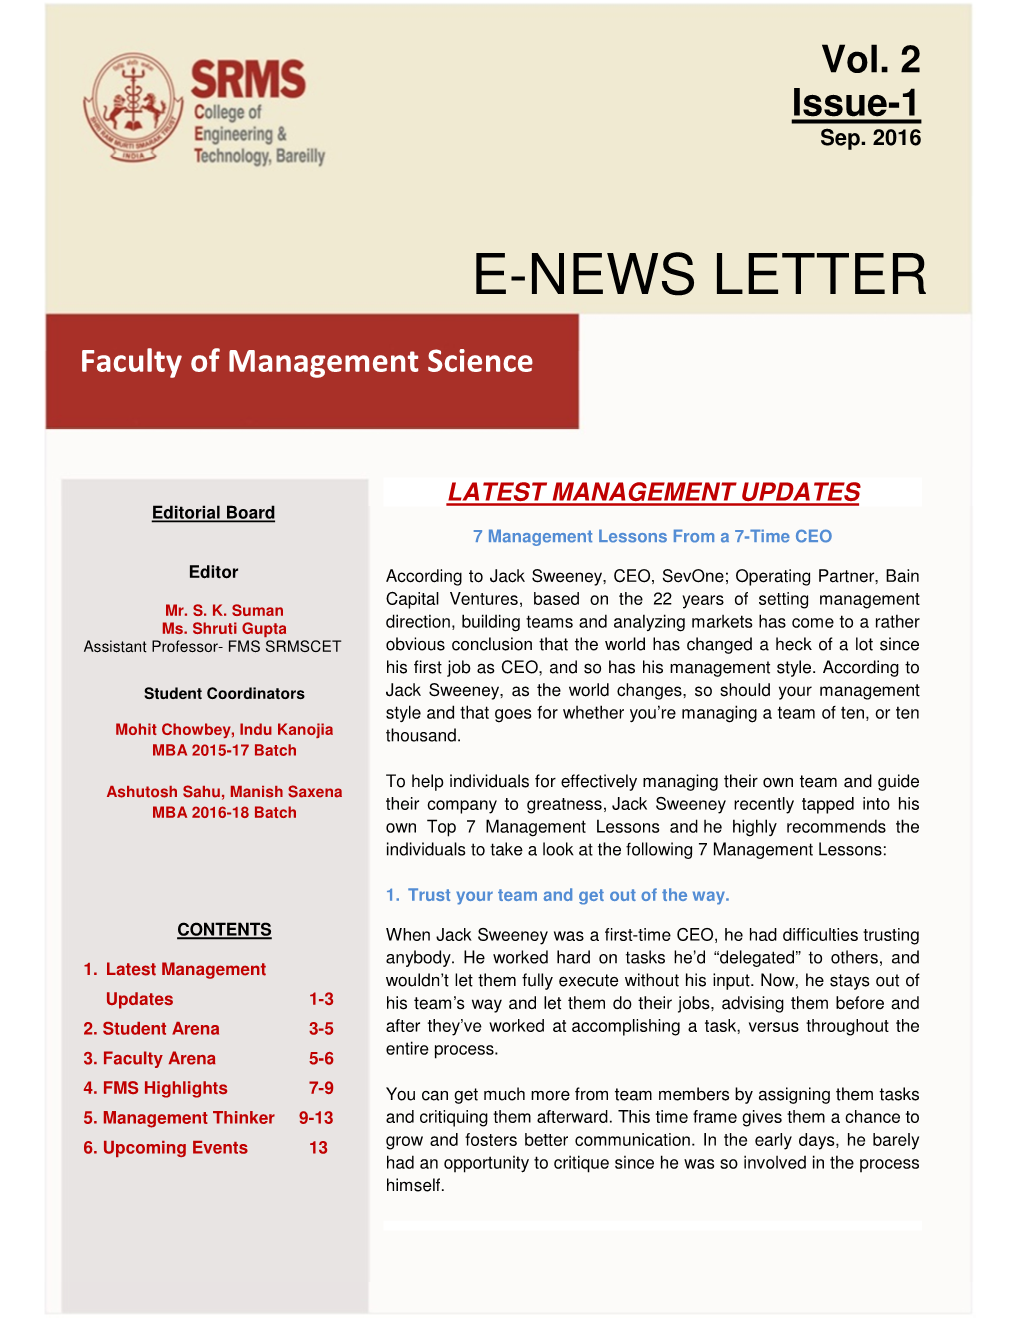 E-News Letter